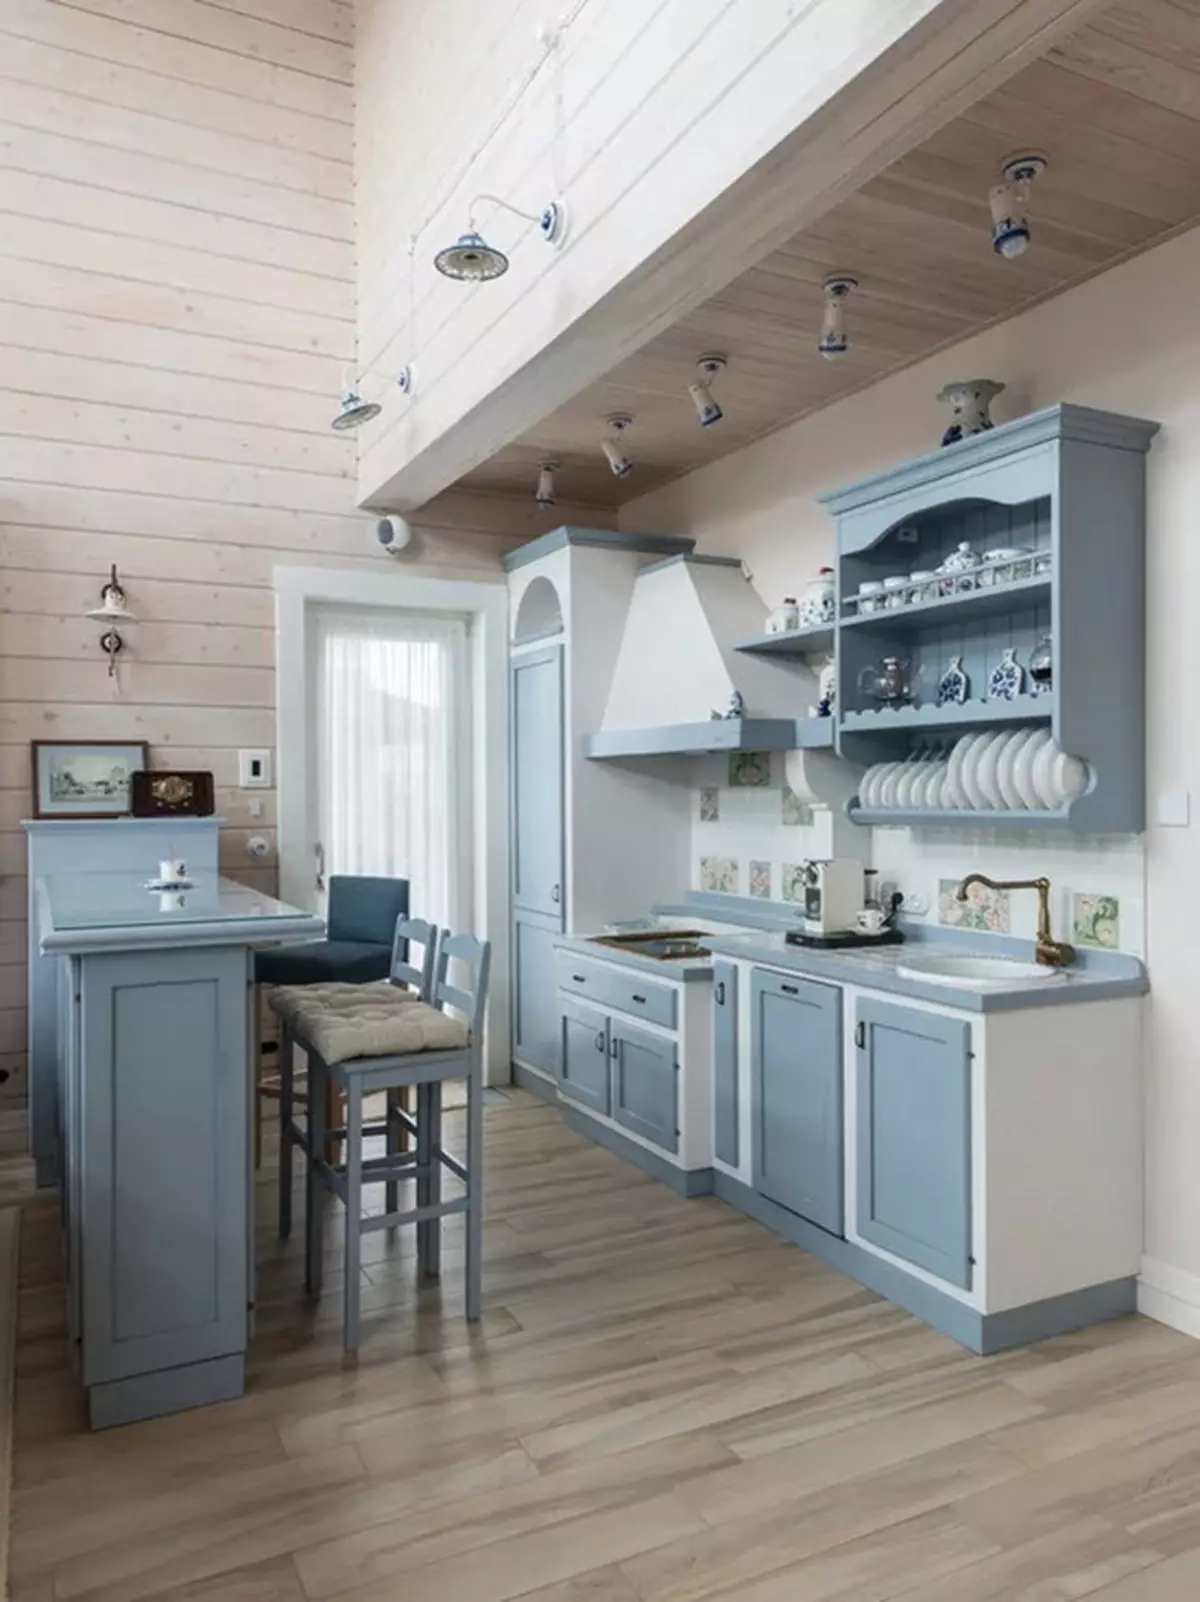 Bucătărie albastră (82 fotografii): Ce culori sunt combinate în interiorul unui set de bucătărie albastră? Design de bucătărie în tonuri albastre ușoare și întunecate 9555_65